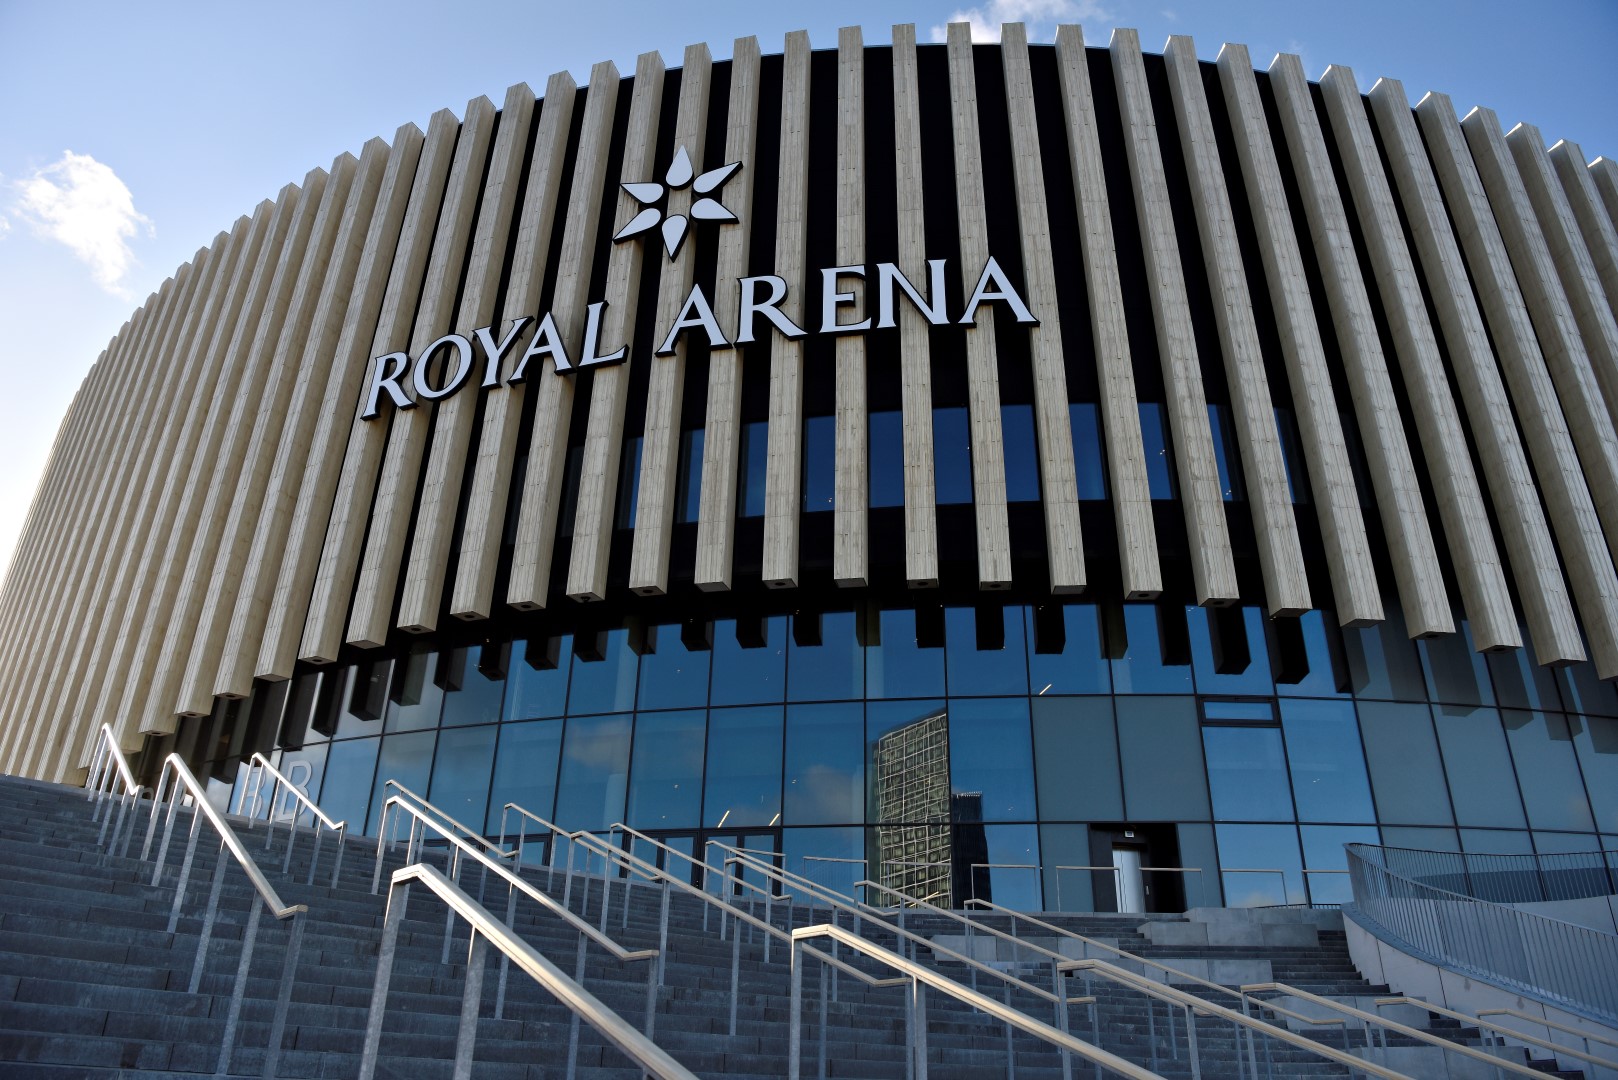 Royal Arena runder milepæl Royal Arena